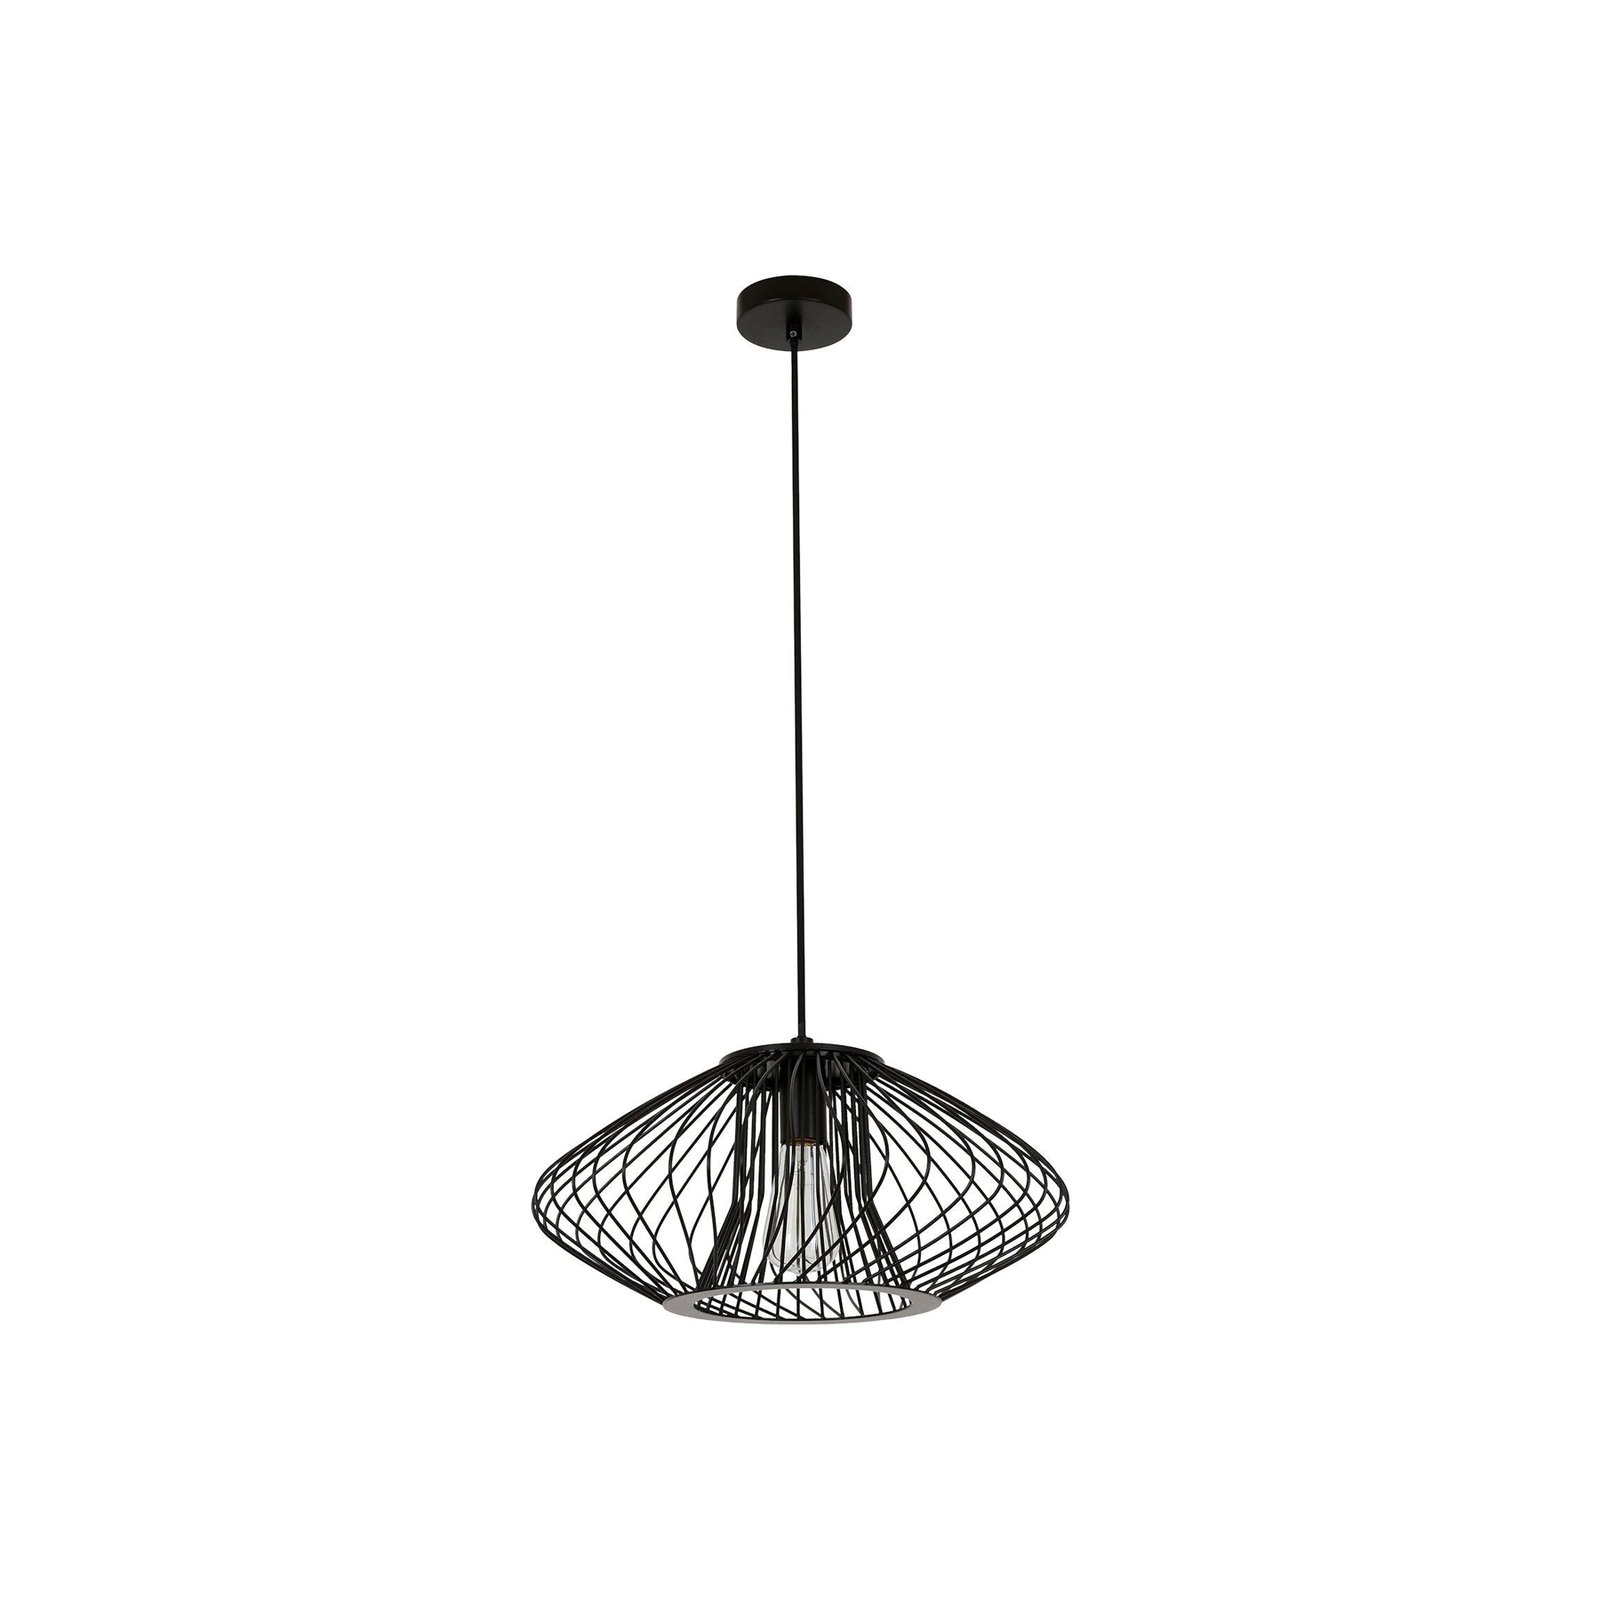 Hanglamp Pheonix Squat, zwart, metaal, Ø 45 cm